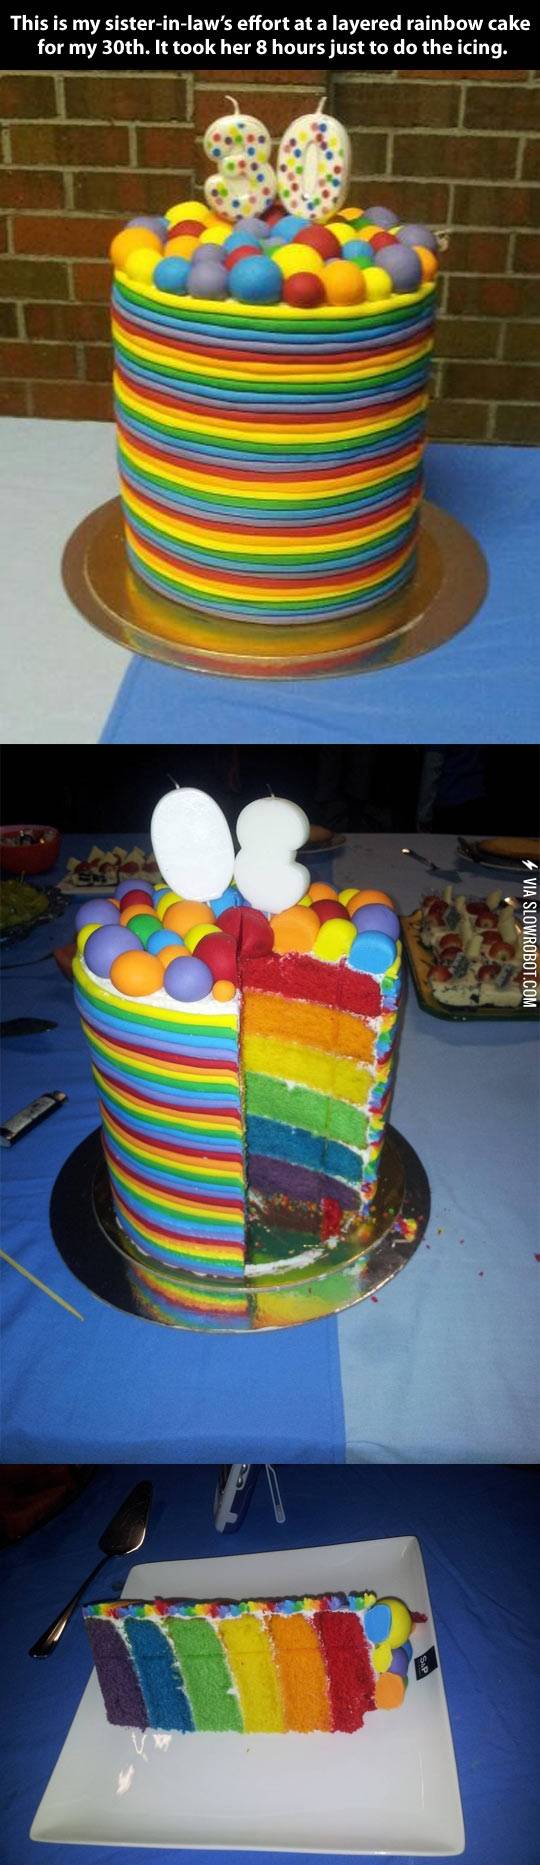 This+cake+is+legit.